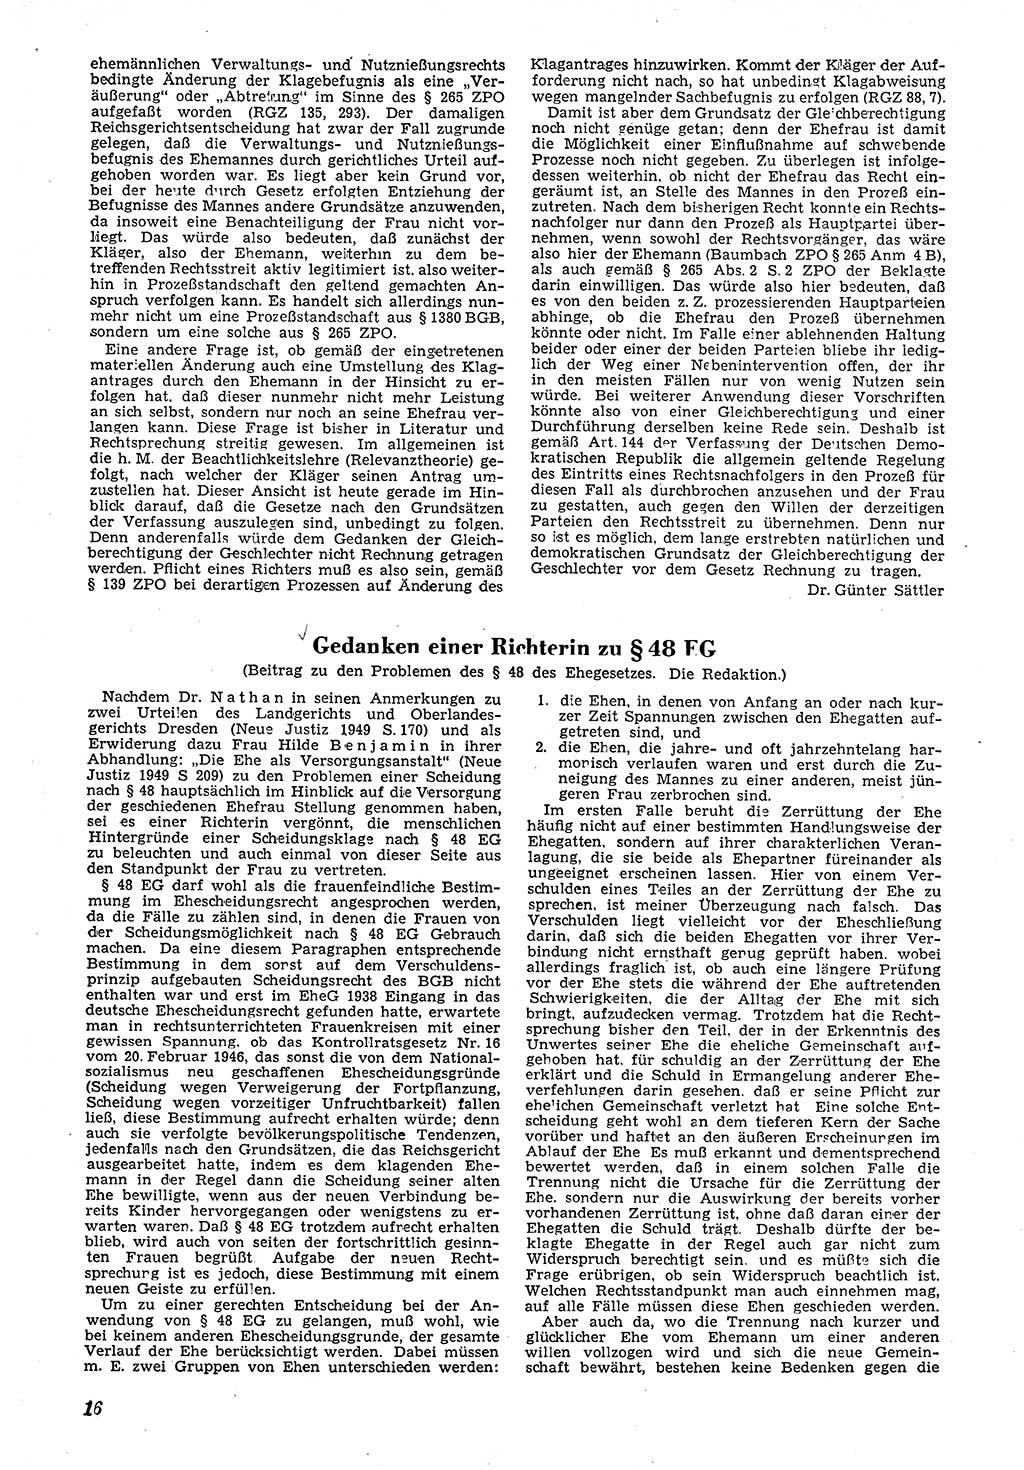 Neue Justiz (NJ), Zeitschrift für Recht und Rechtswissenschaft [Deutsche Demokratische Republik (DDR)], 4. Jahrgang 1950, Seite 16 (NJ DDR 1950, S. 16)